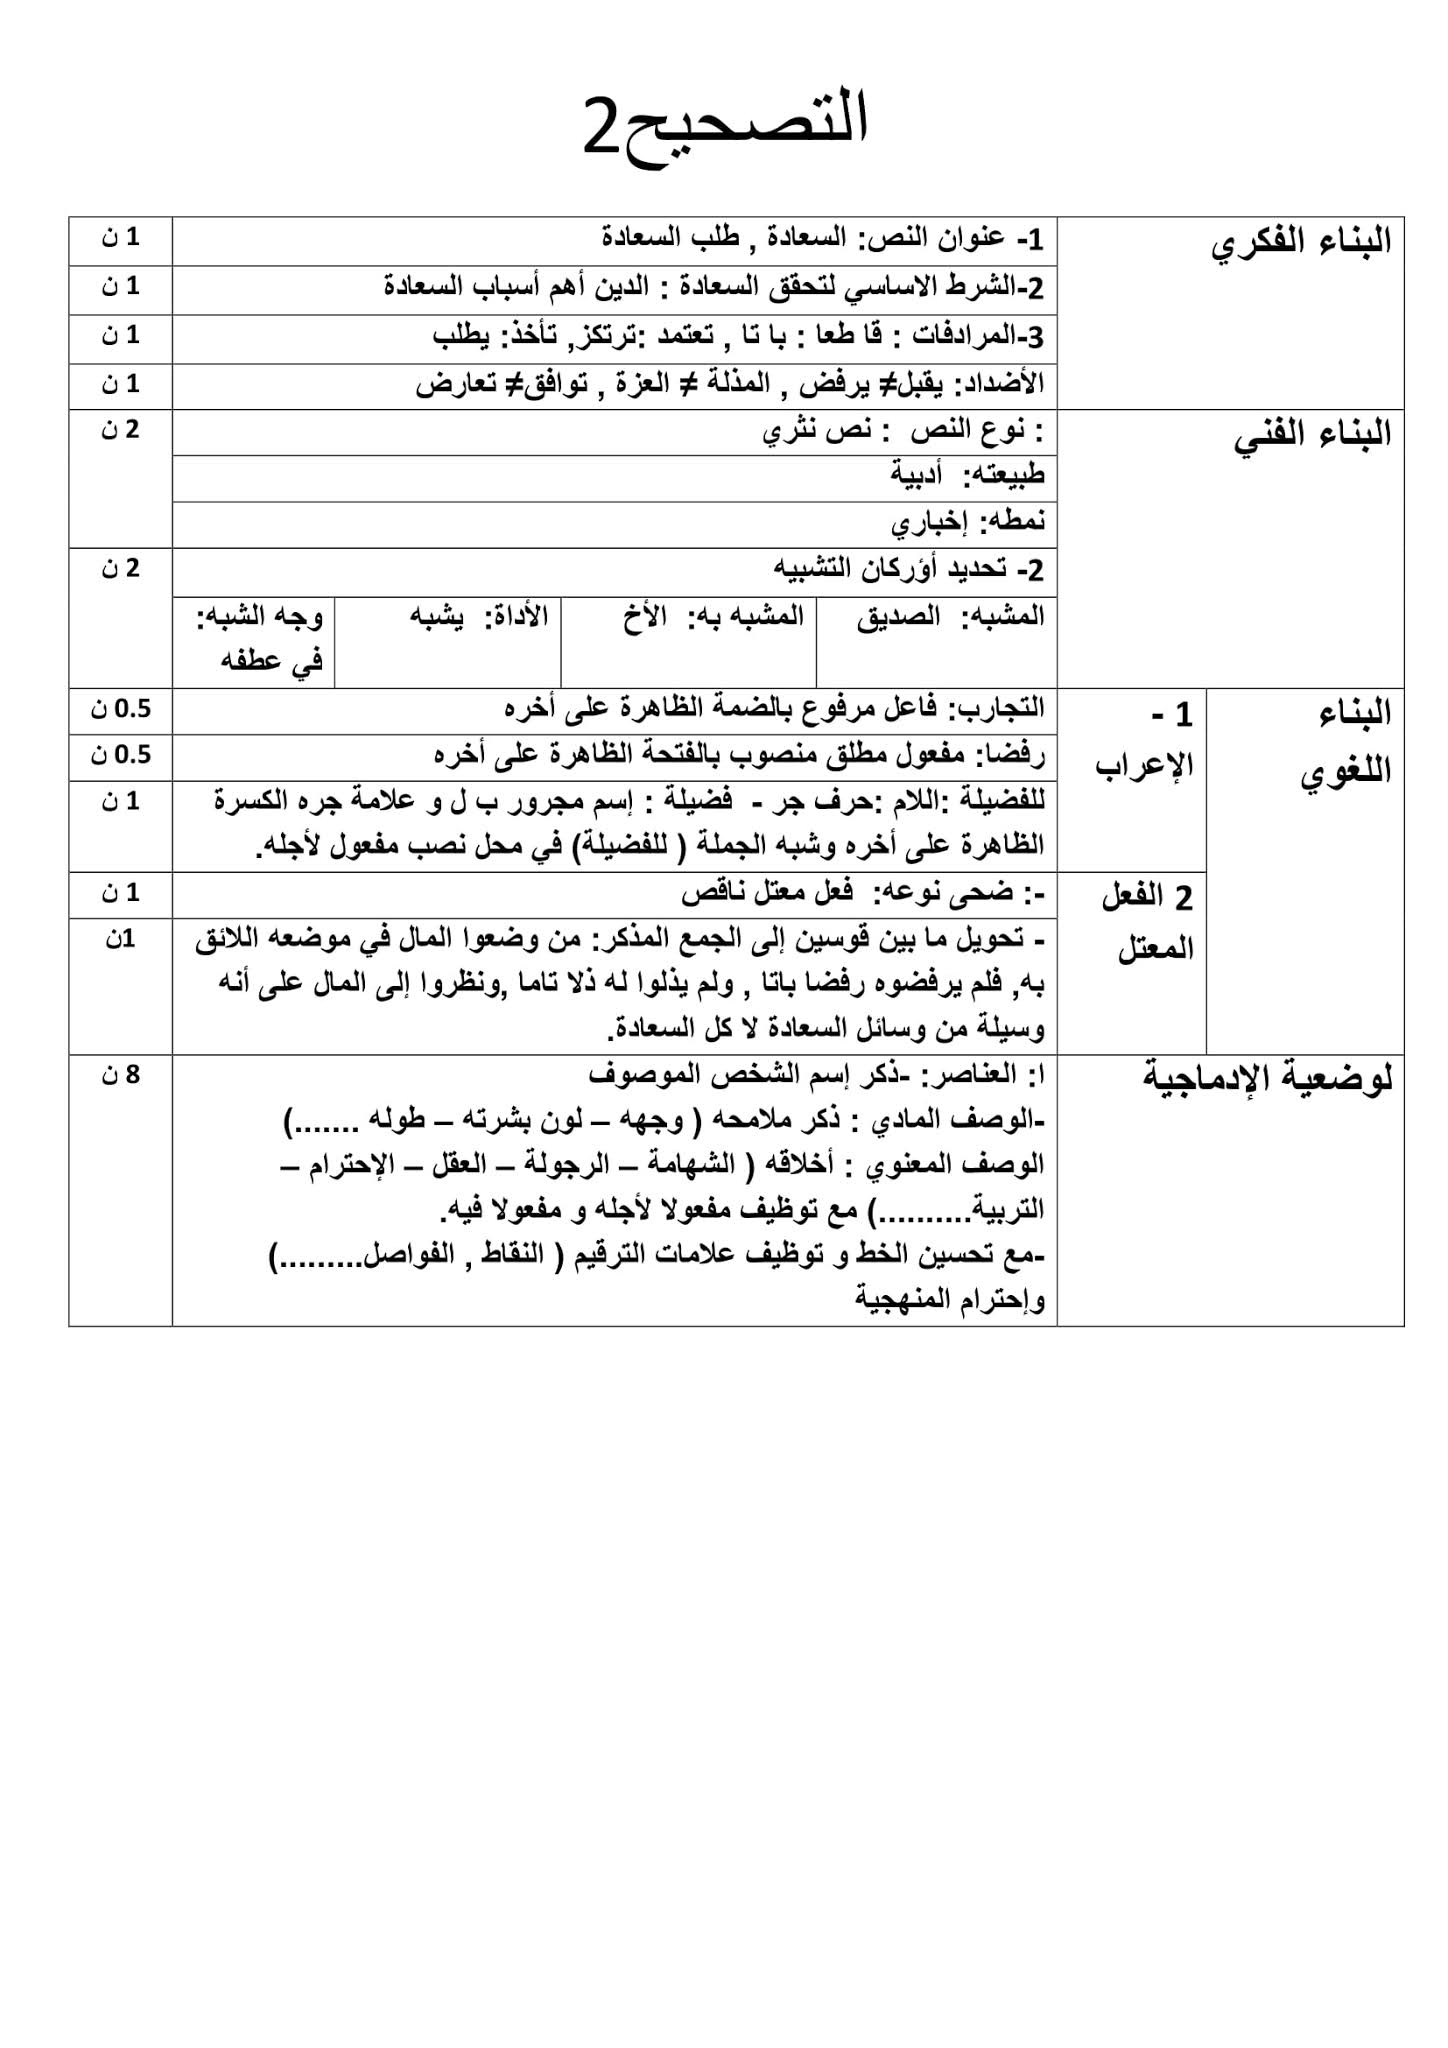 فرض اللغة العربية الفصل الأول للسنة الثانية متوسط - الجيل الثاني نموذج 2